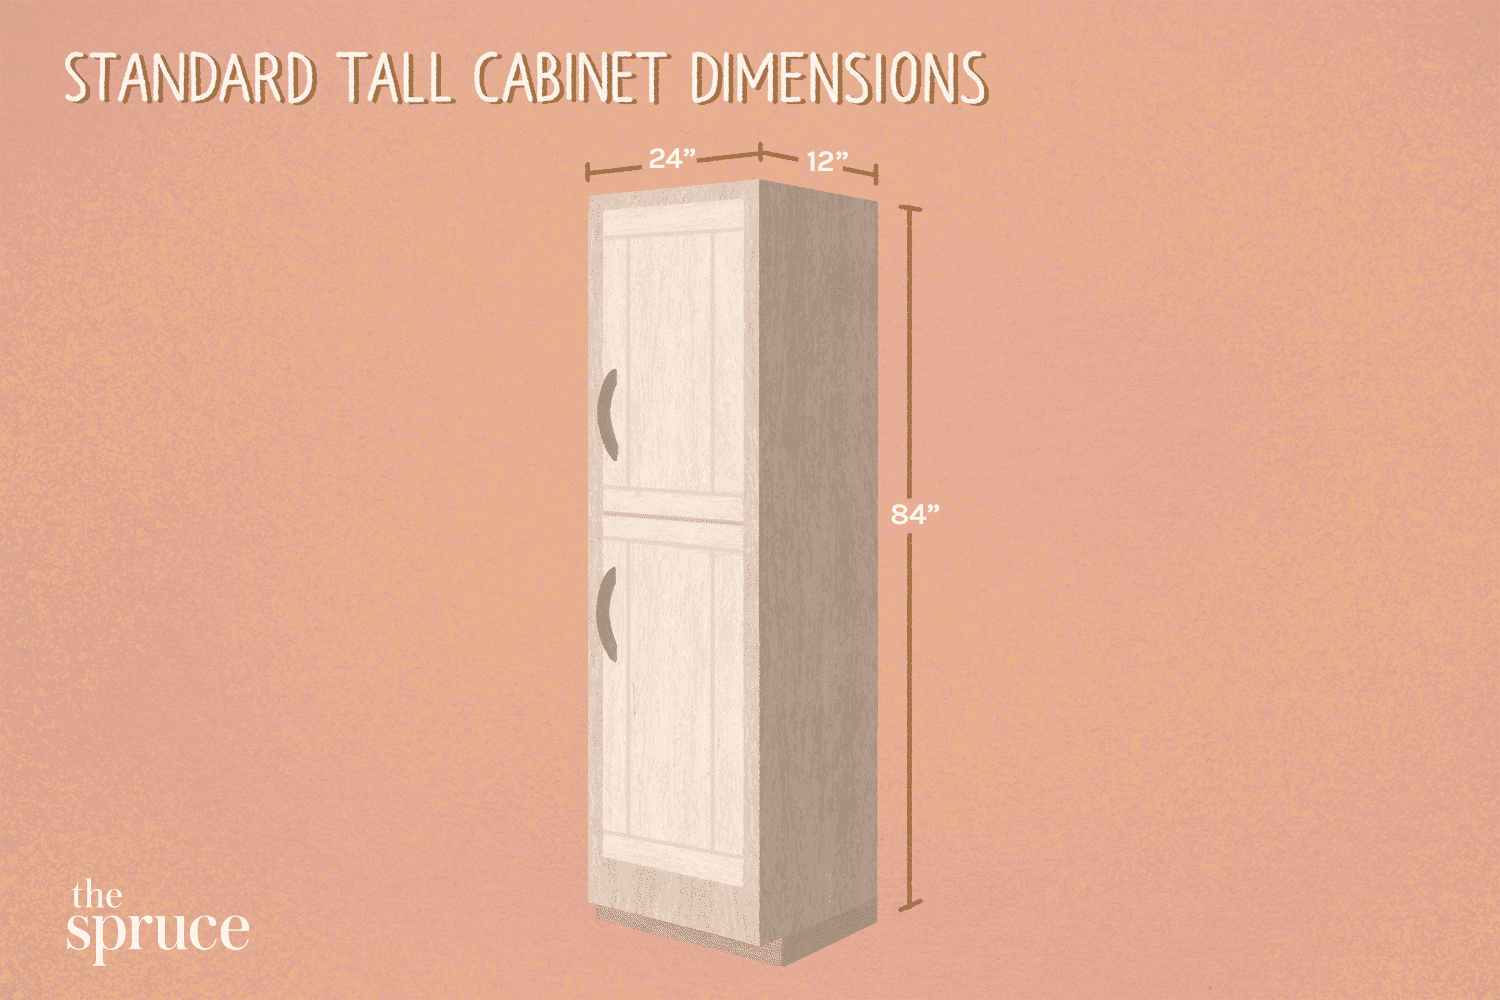 Ilustración de dimensiones estándar de armarios altos